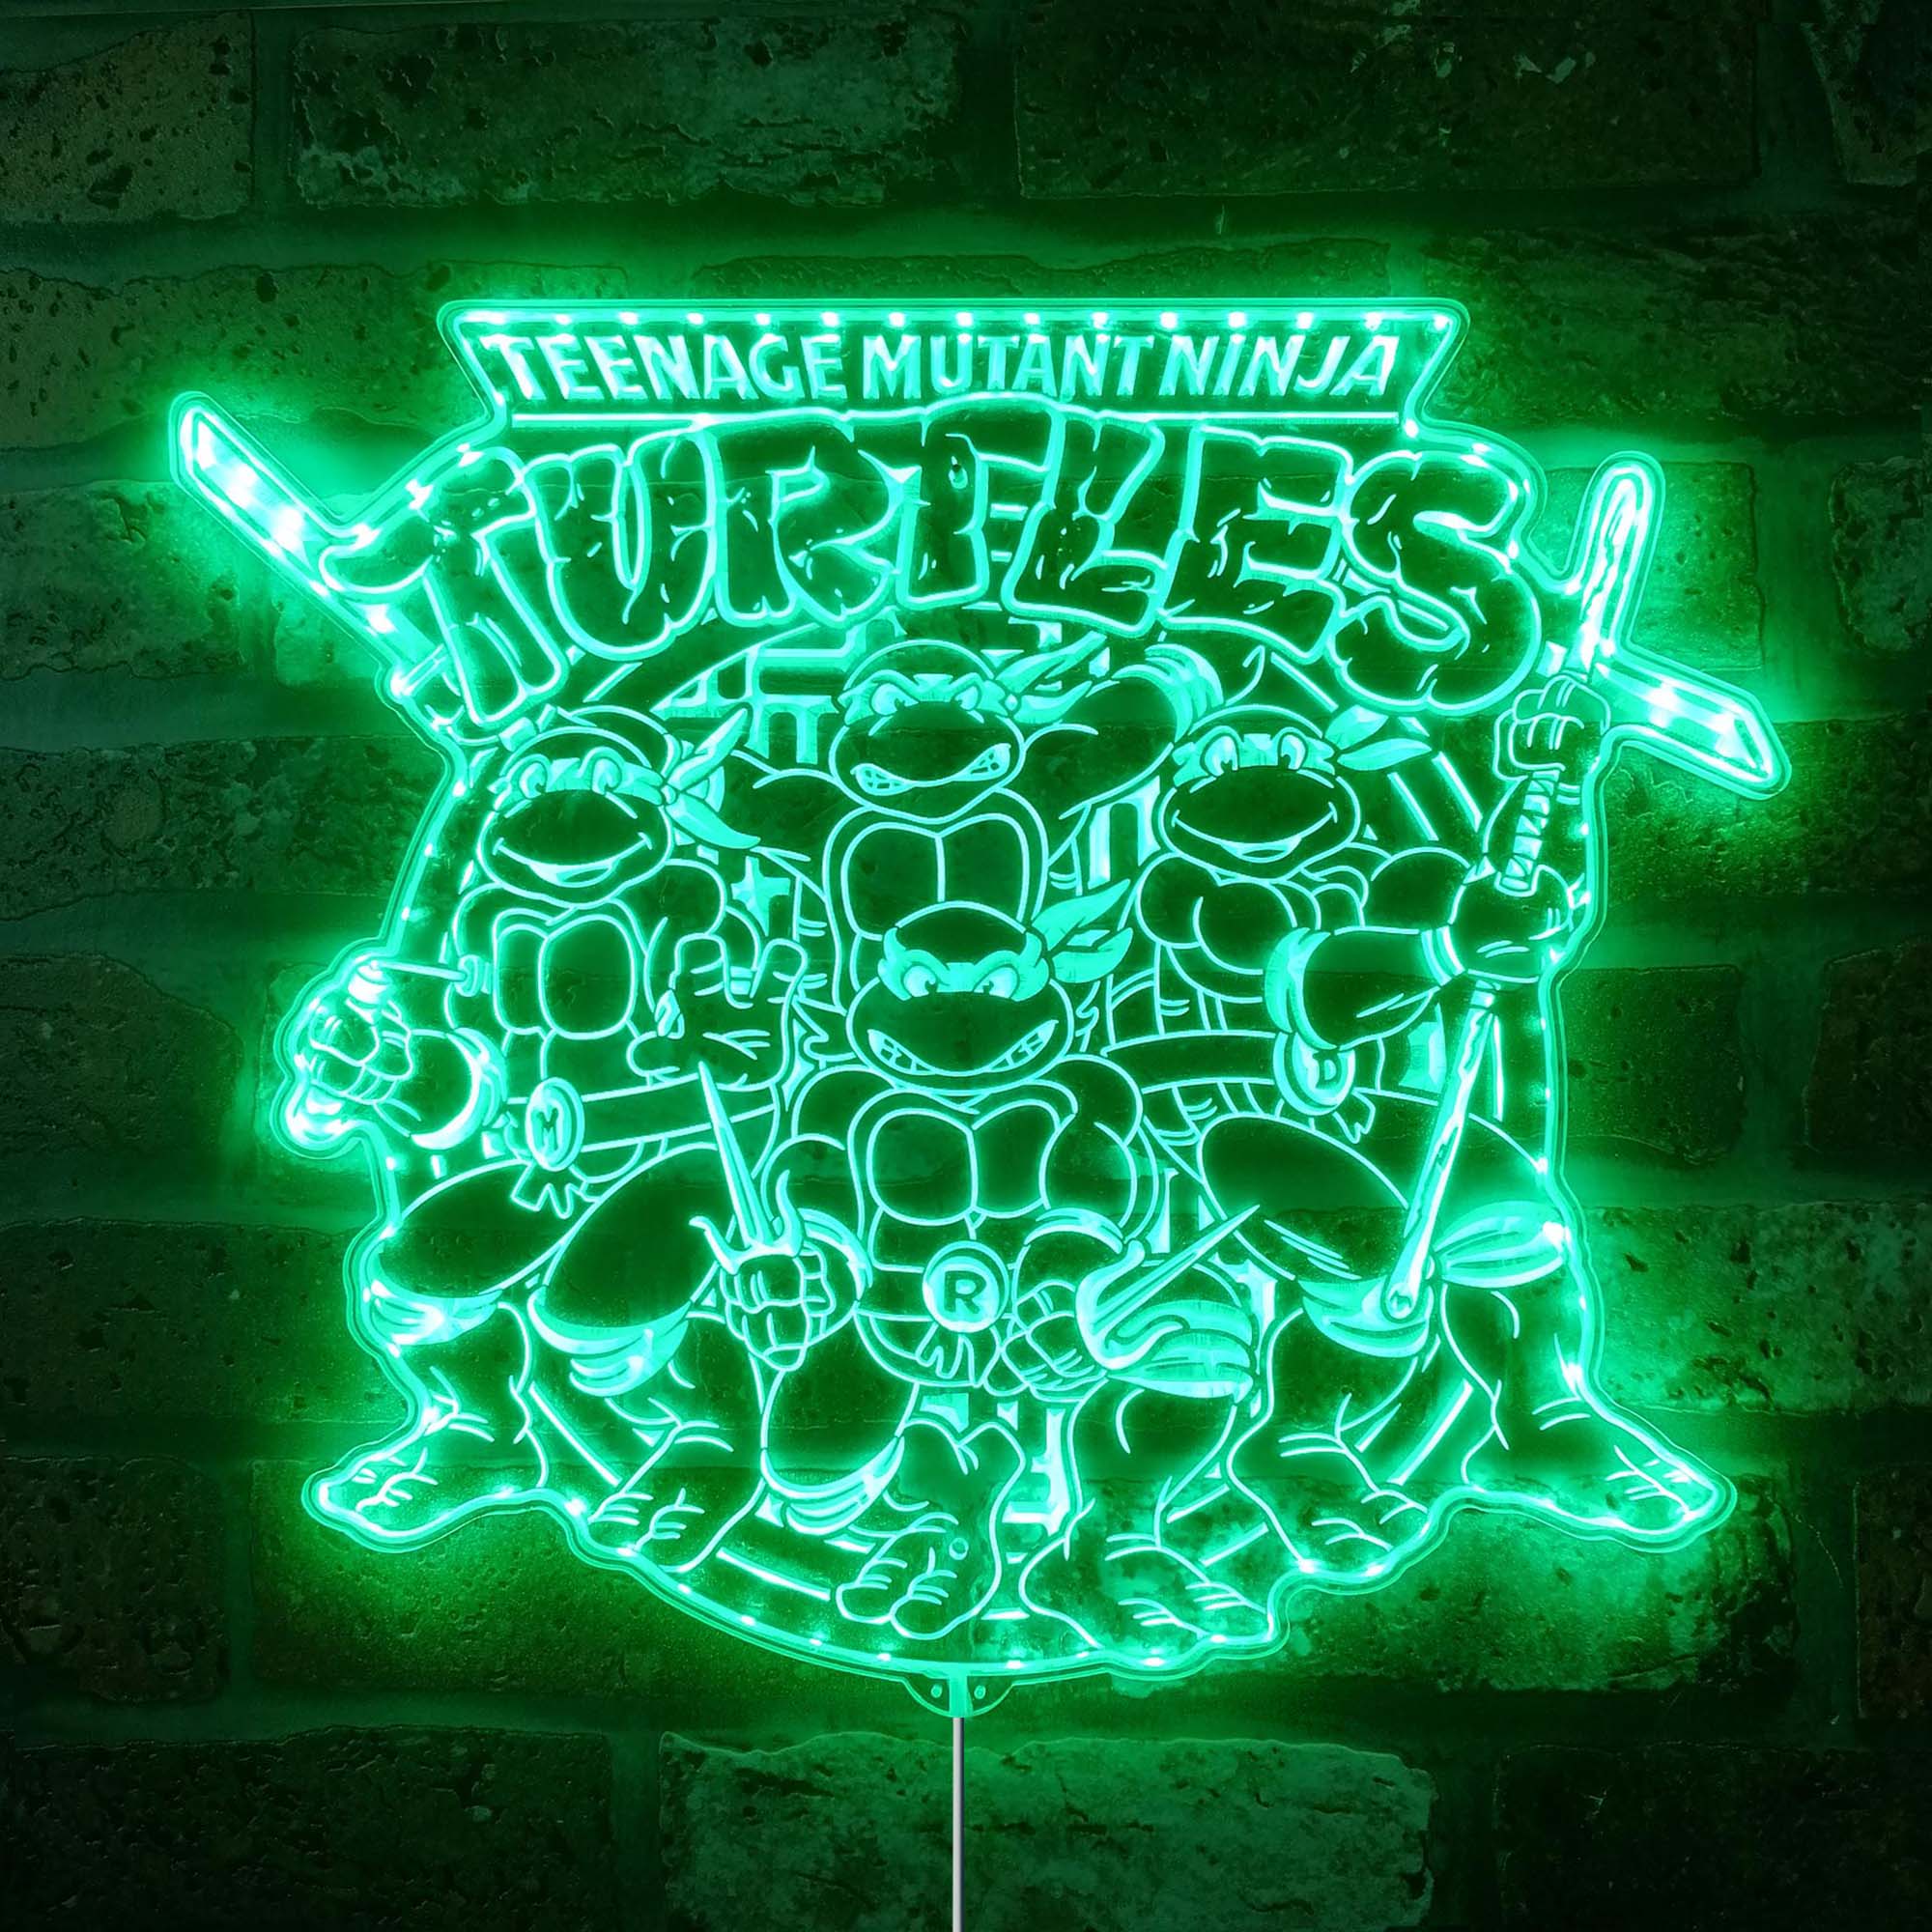 Teenage Mutant Ninja Turtles Dynamic RGB Edge Lit LED Sign